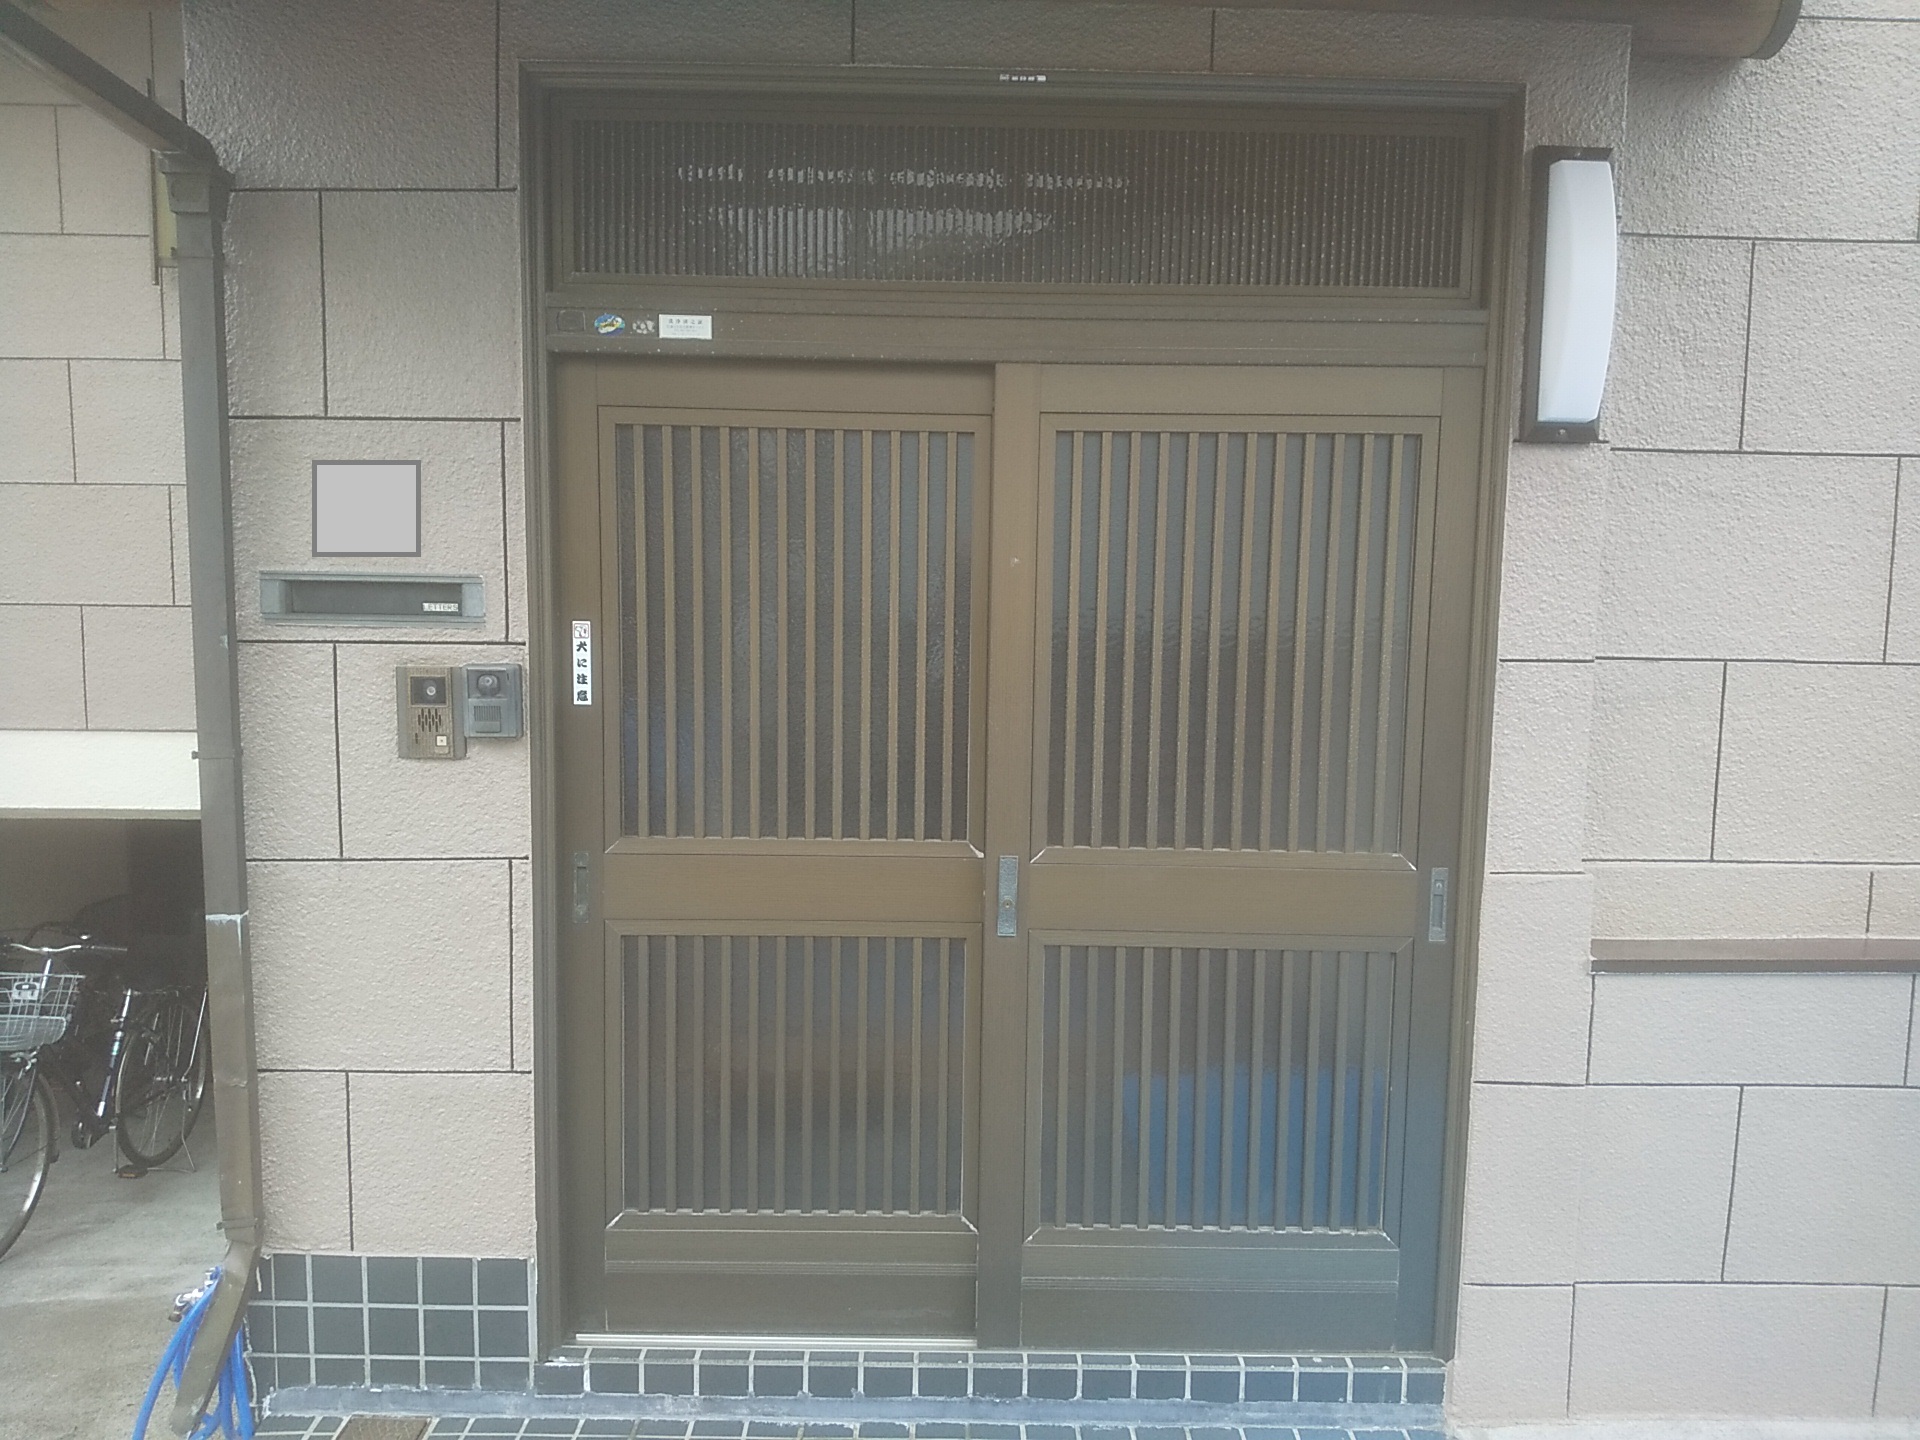 前時代的な和風の玄関引戸を素敵なデザインの引戸に交換 Ykkapドアリモc02 玄関ドアのリフォームなら玄関ドアマイスターへお任せください